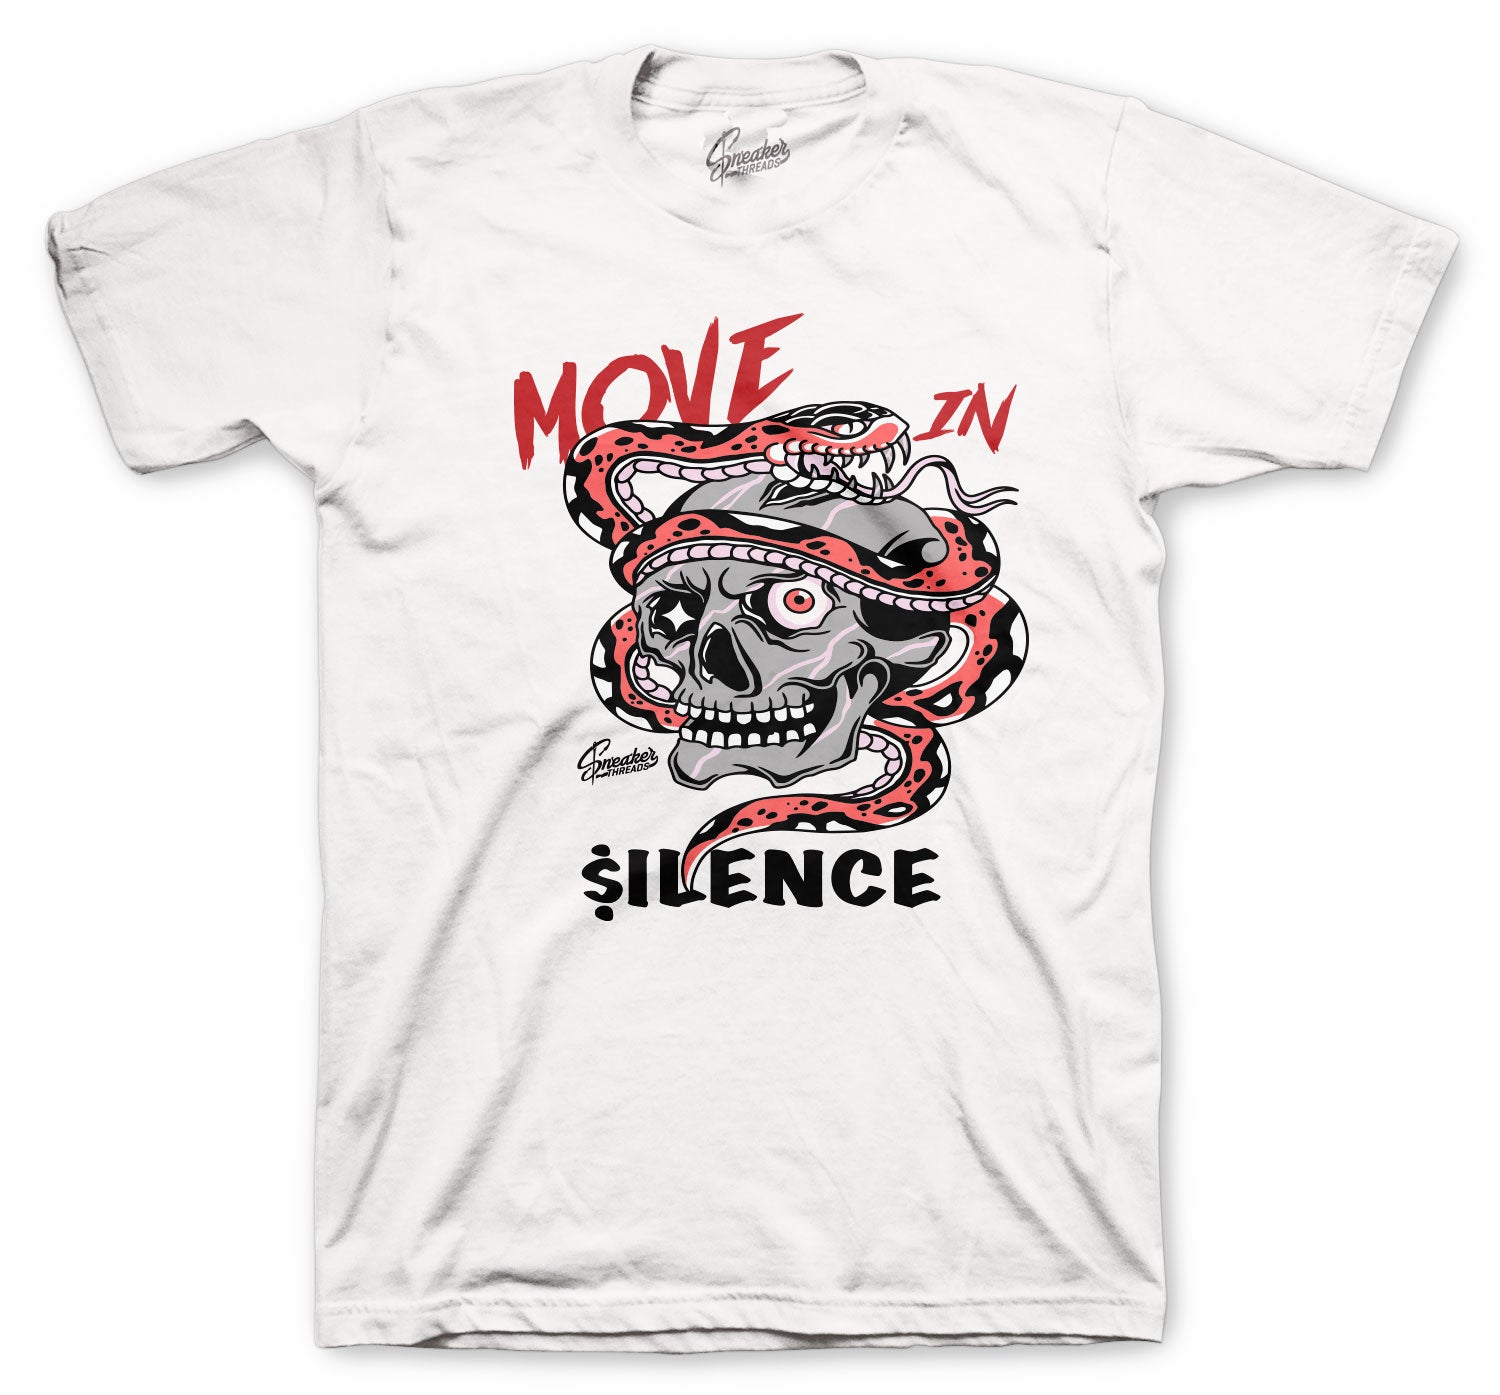 Dunk SB Love Shirt - Move In Silence - White